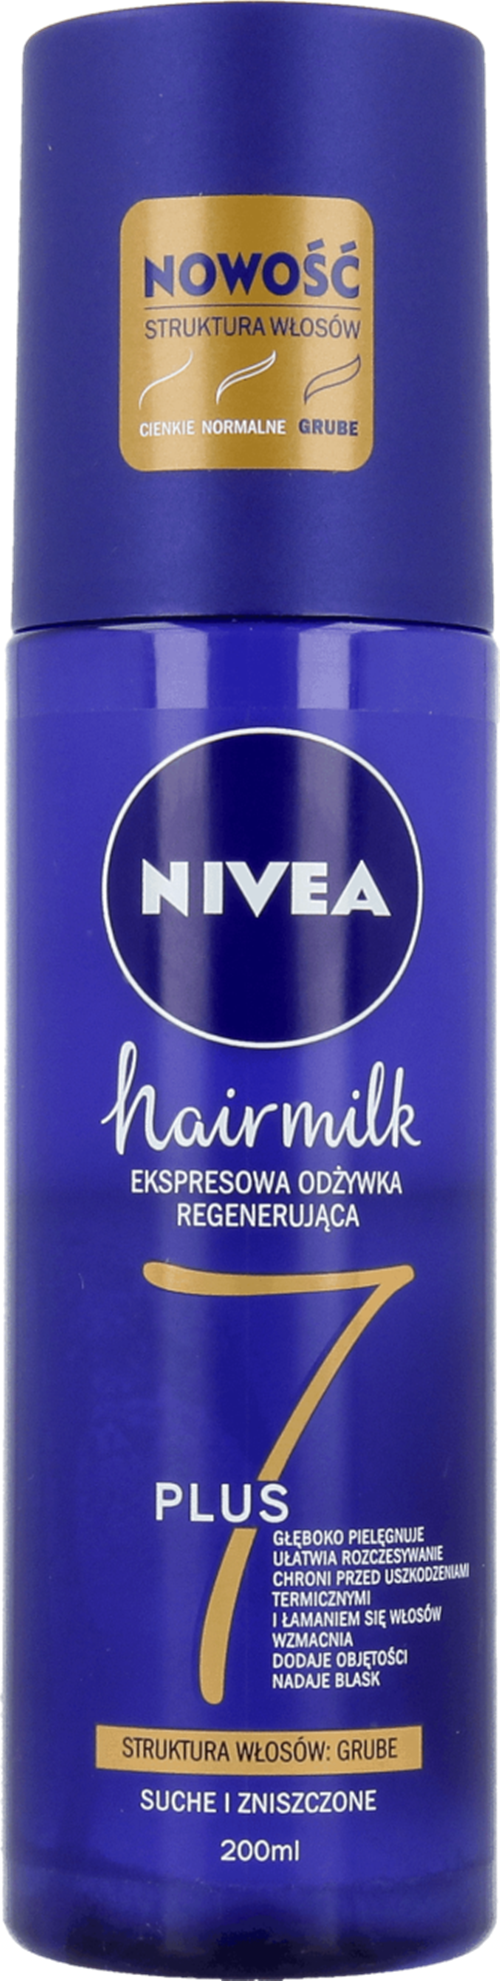 niveahairmilkekspresowa regenerująca odżywka do włosów o strukturze cienkiej